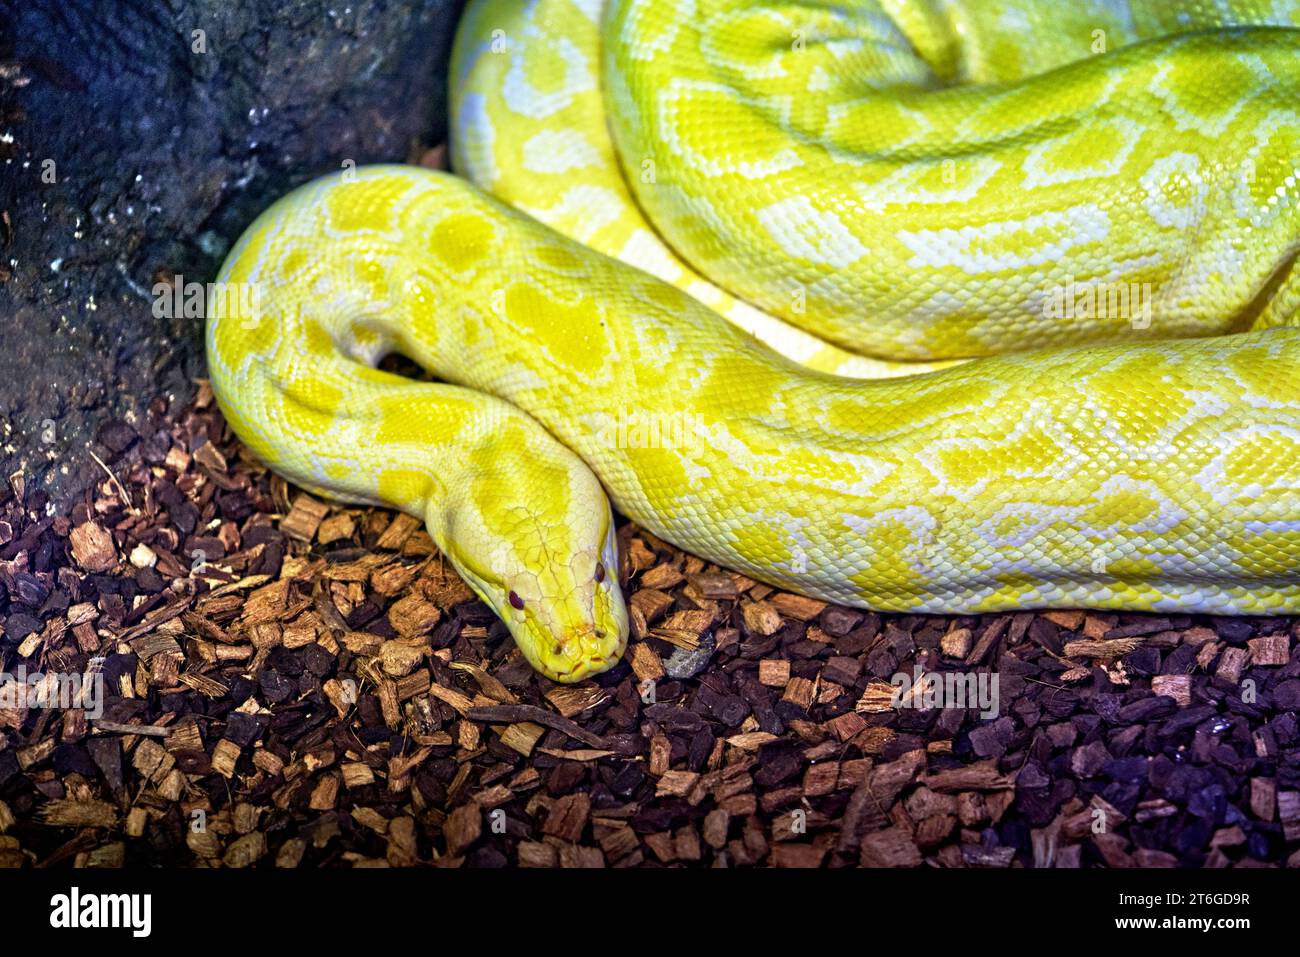 Primo piano sul grande serpente, Albino Burmese Phytron o Python bivittatus in nome scientifico, vista dall'alto. Foto Stock